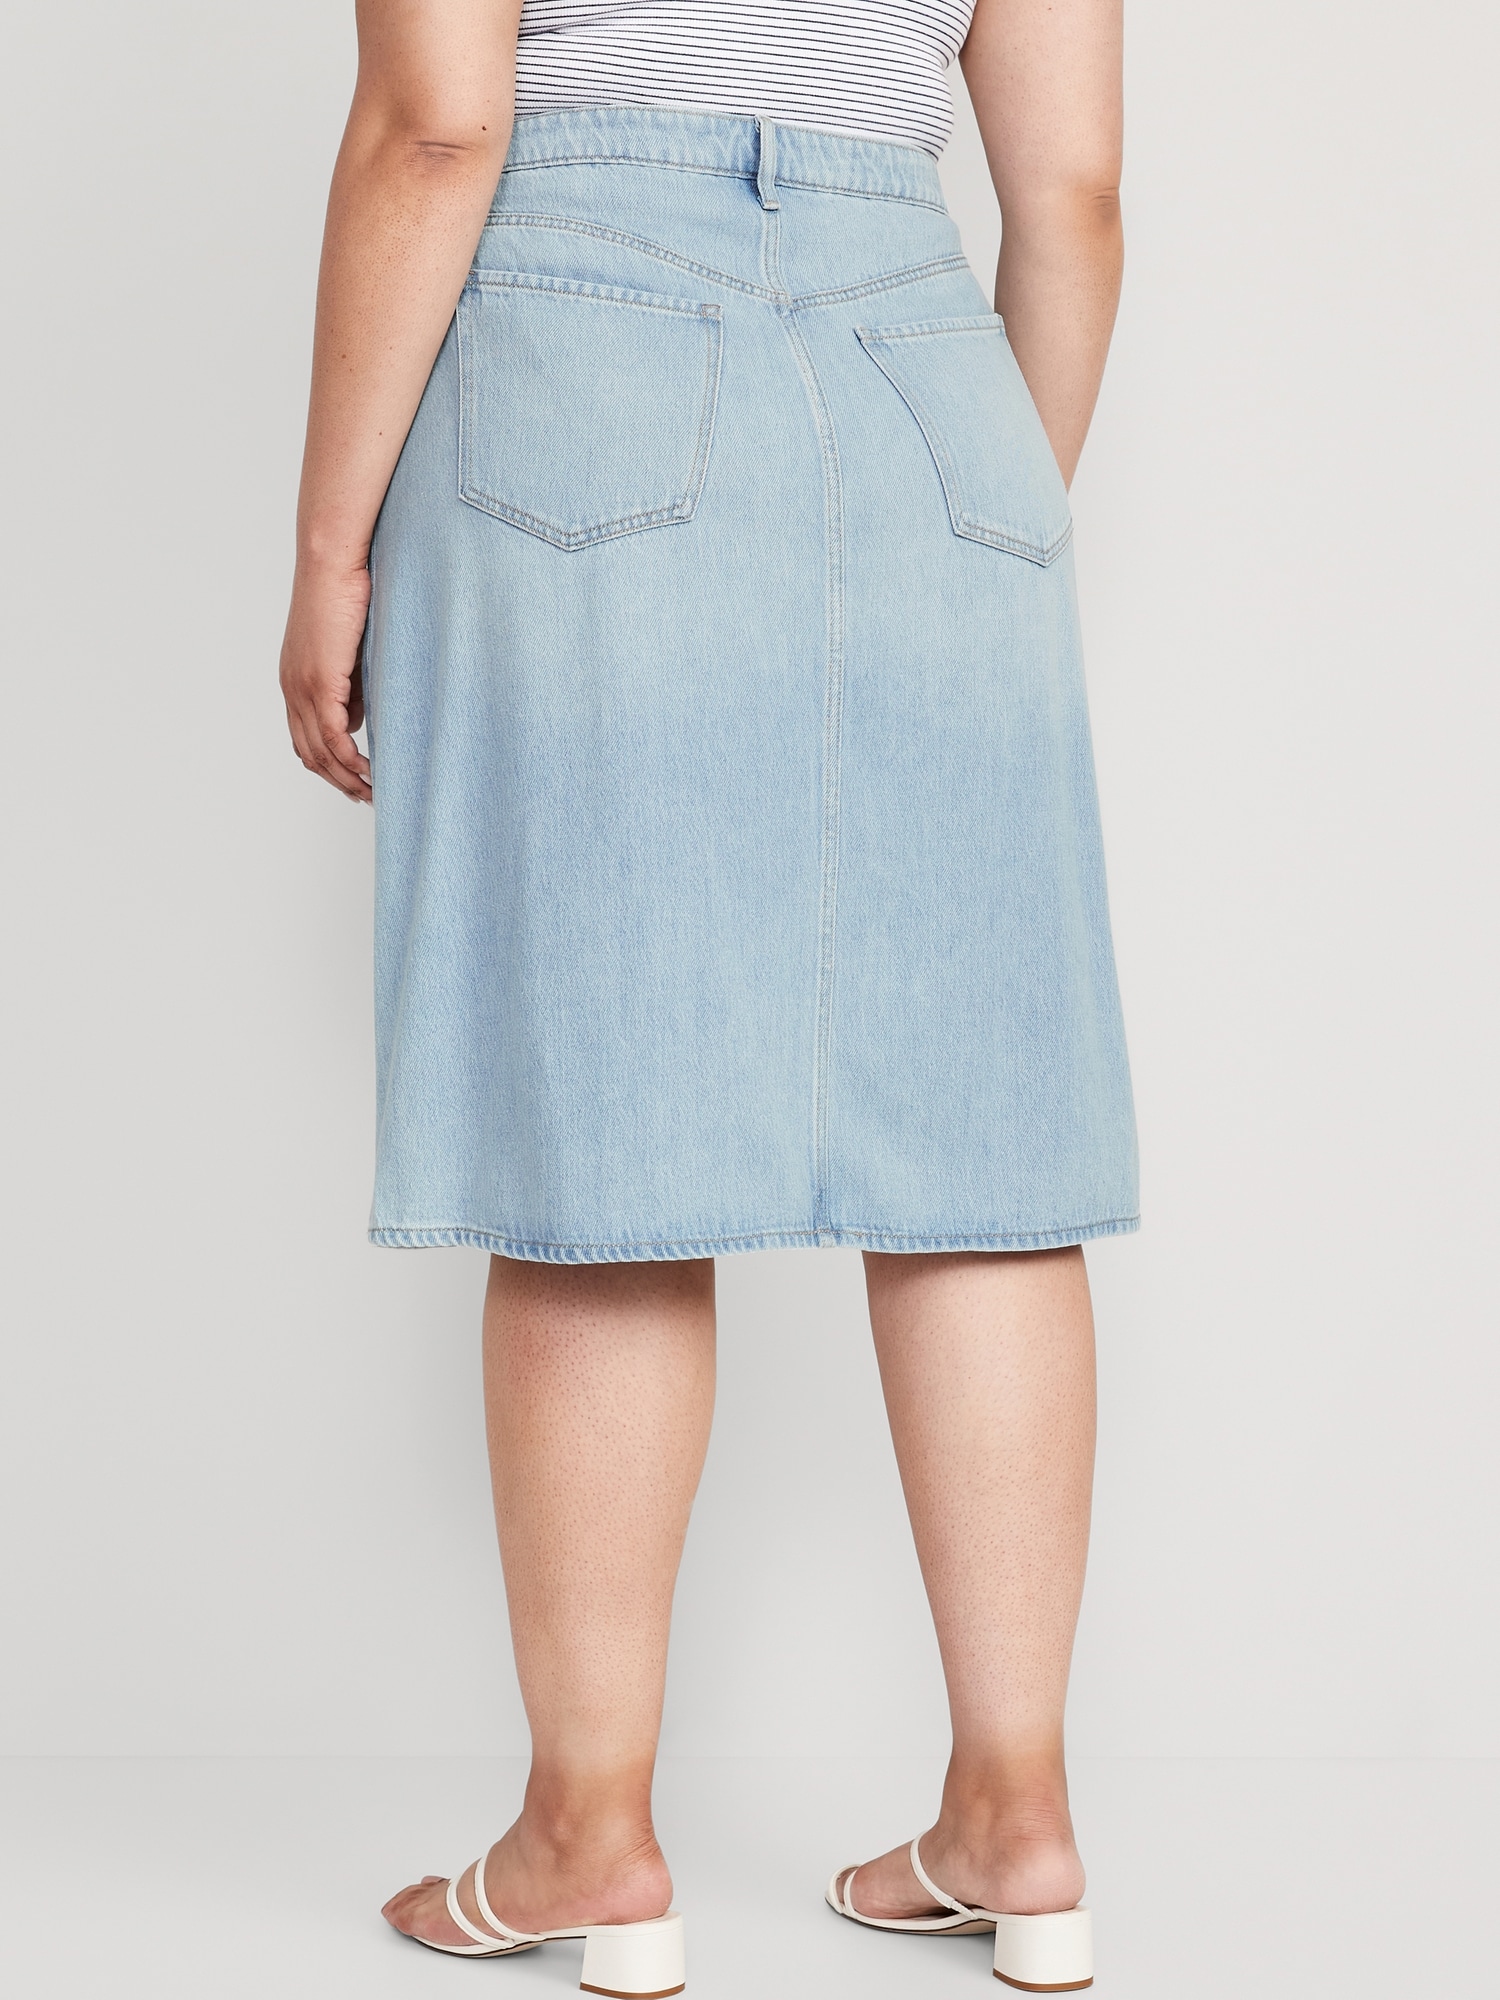 Modest Navy Blue Denim Skirt | Ankle-Length 40-Inch Long | Women's Size 12  | 32 Waist